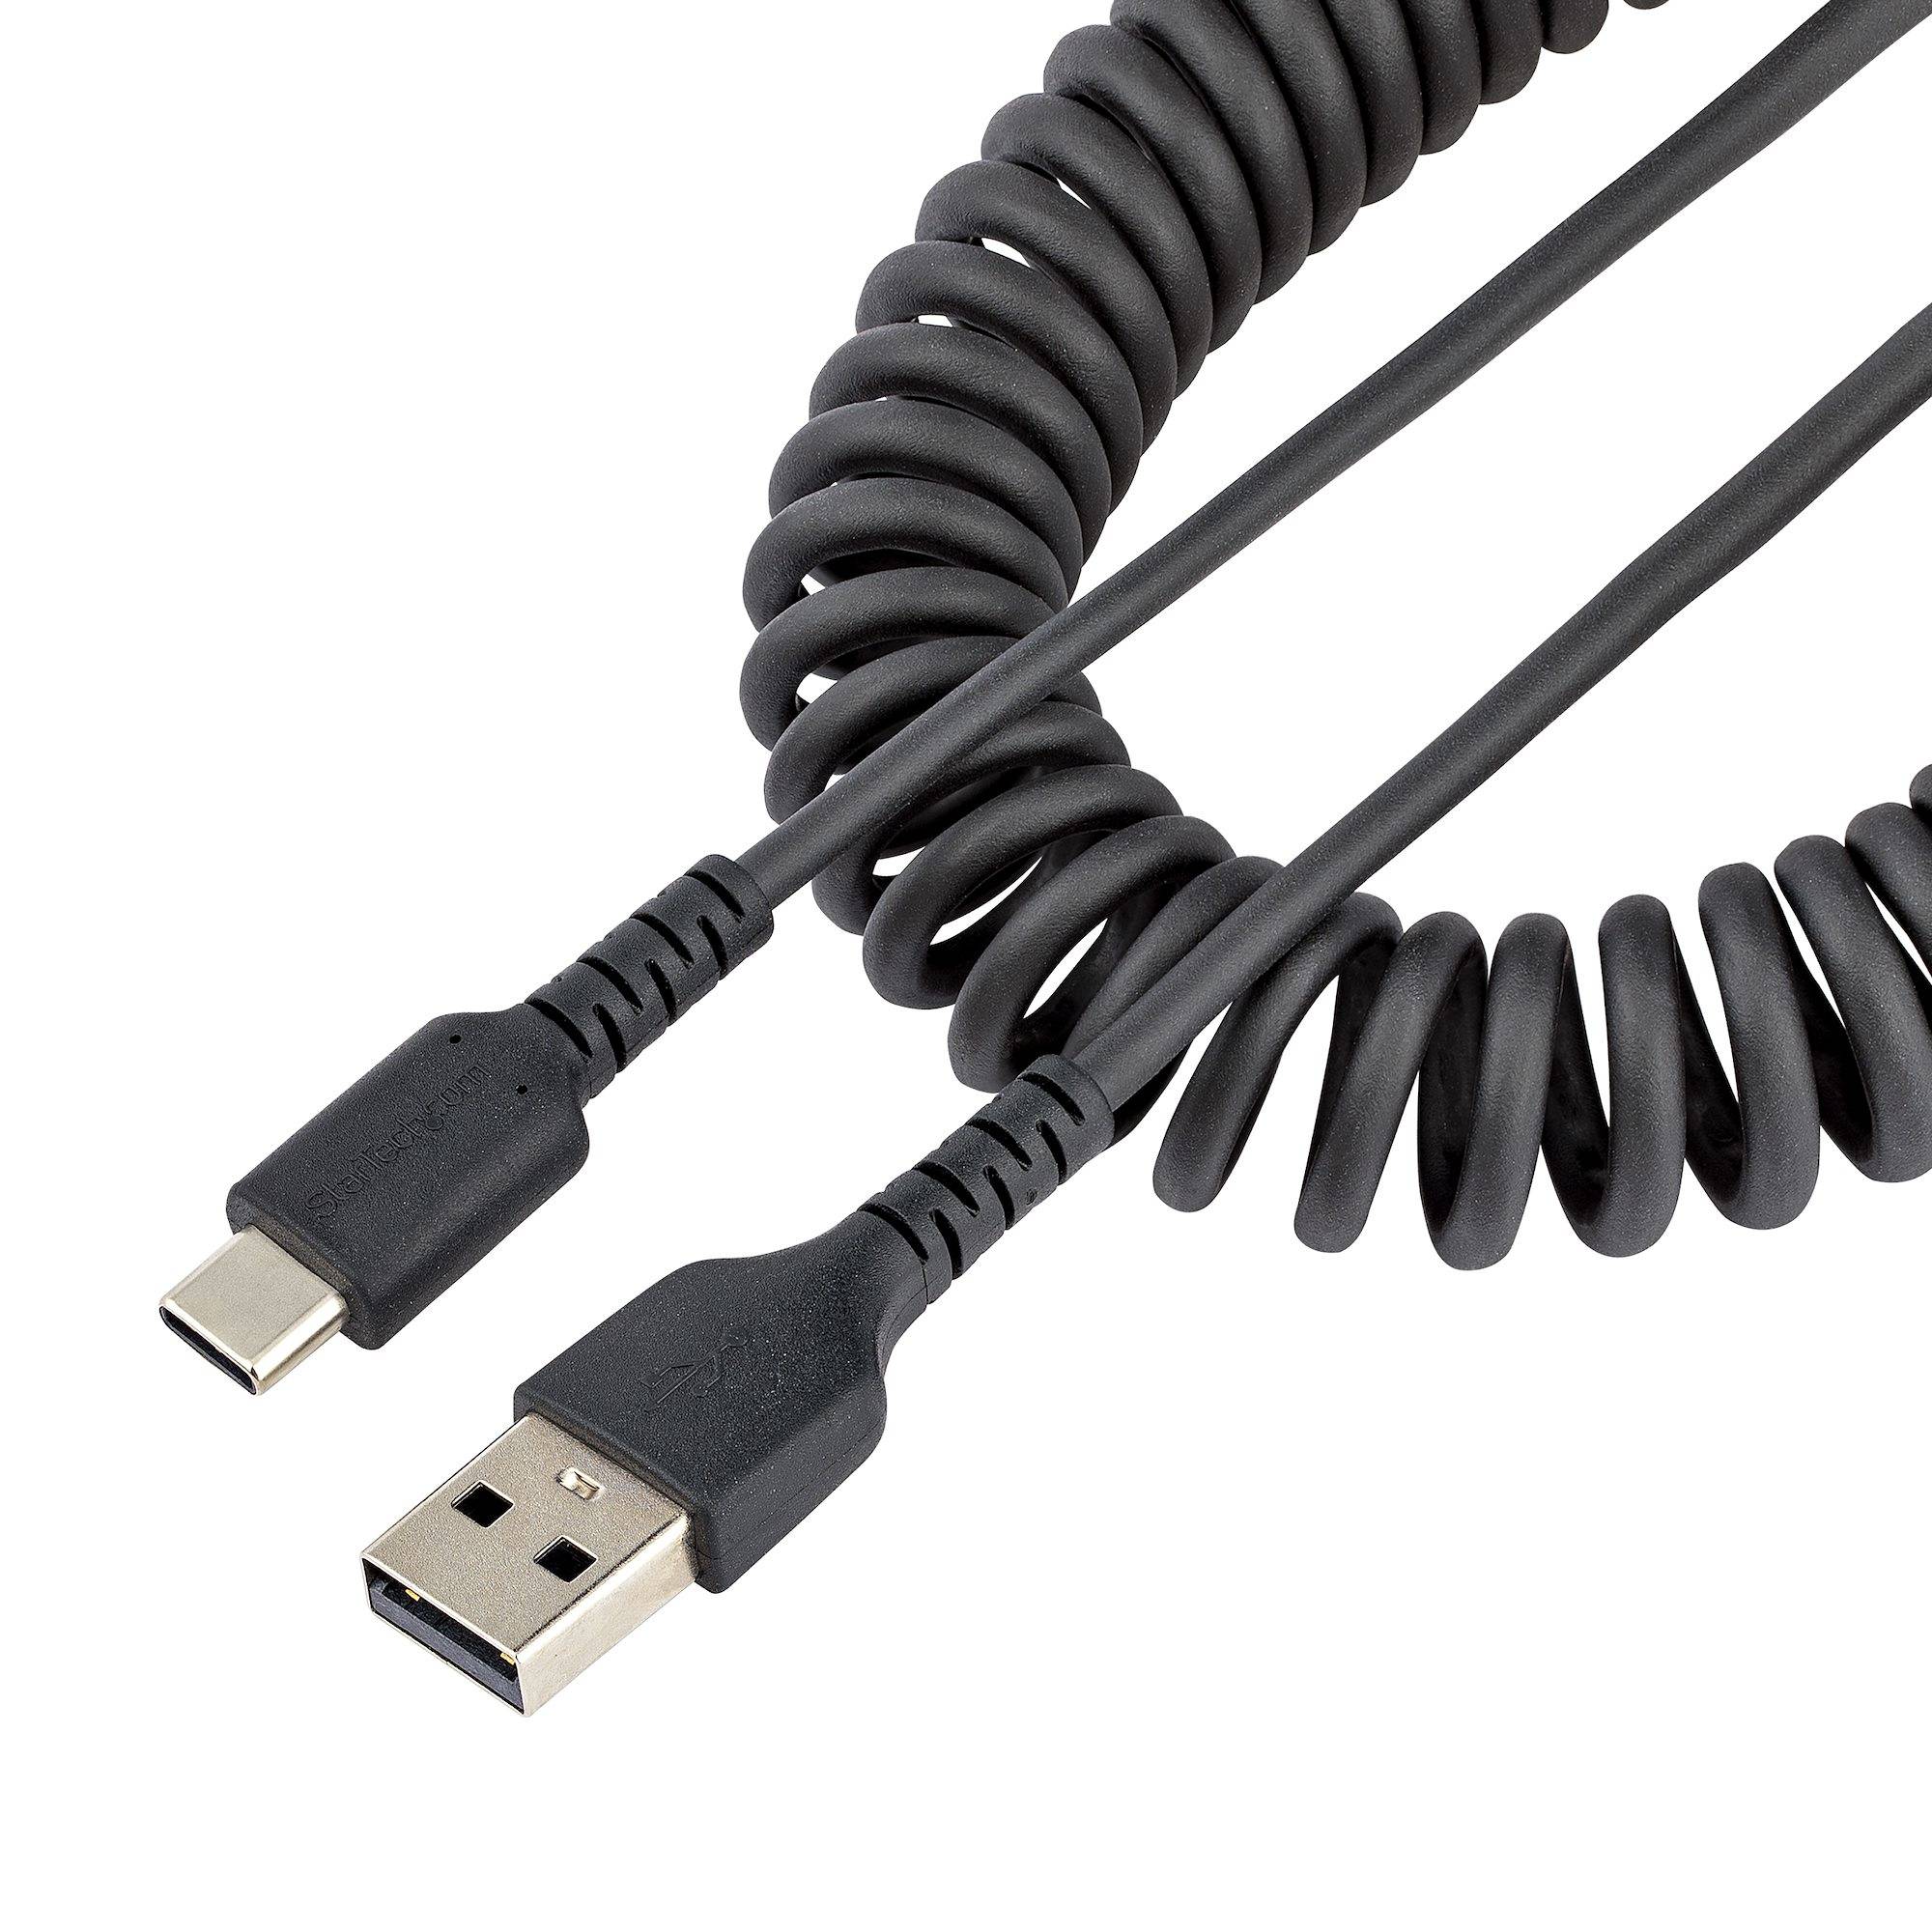 Rca Informatique - Image du produit : CABLE USB VERS USB-C DE 1M - C ORDON USB-A A USB-C M/M - NOIR